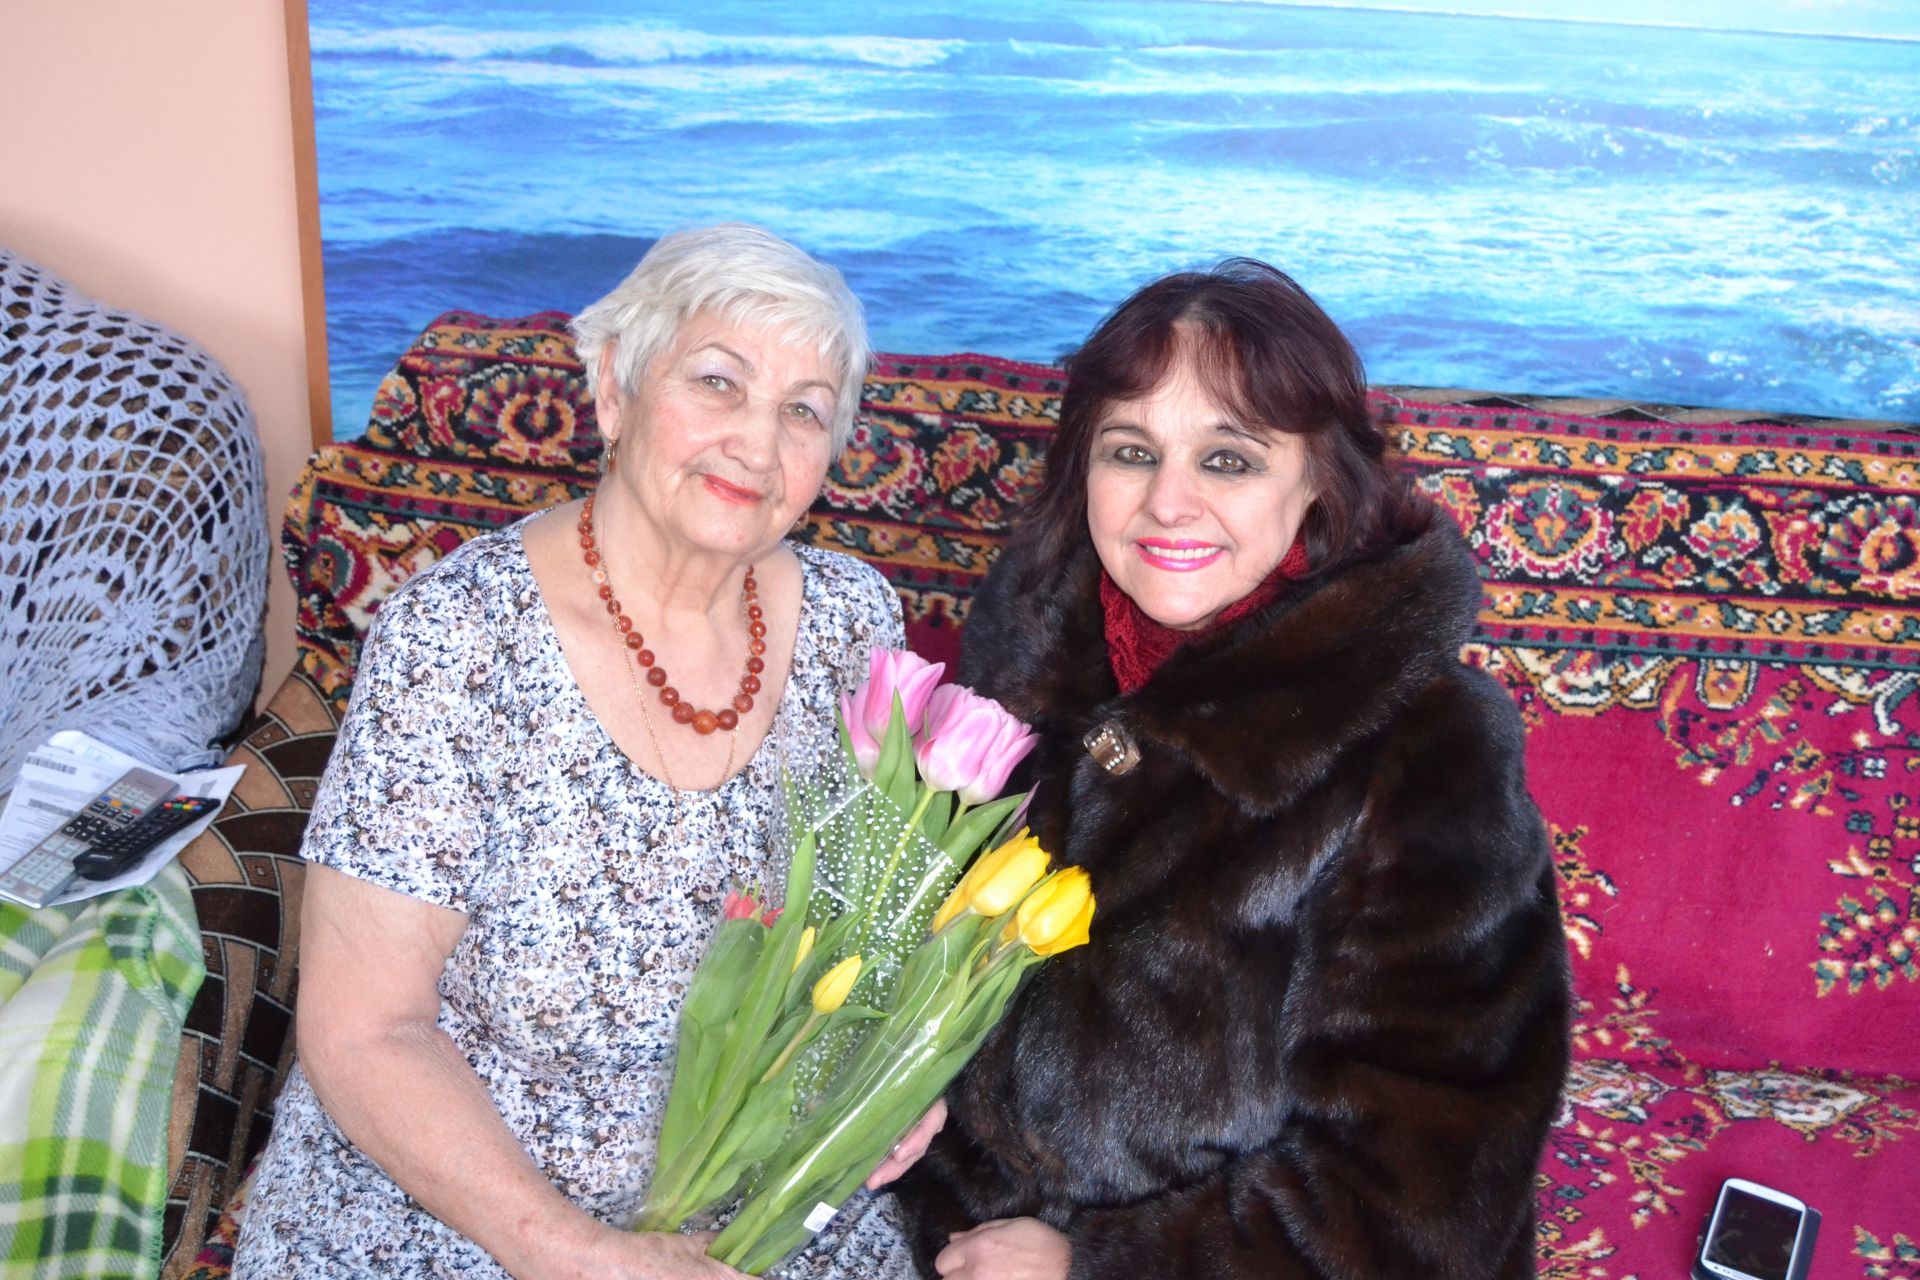 В посёлке совхоз Татарстан провели акцию «Дарите женщинам цветы» ФОТО